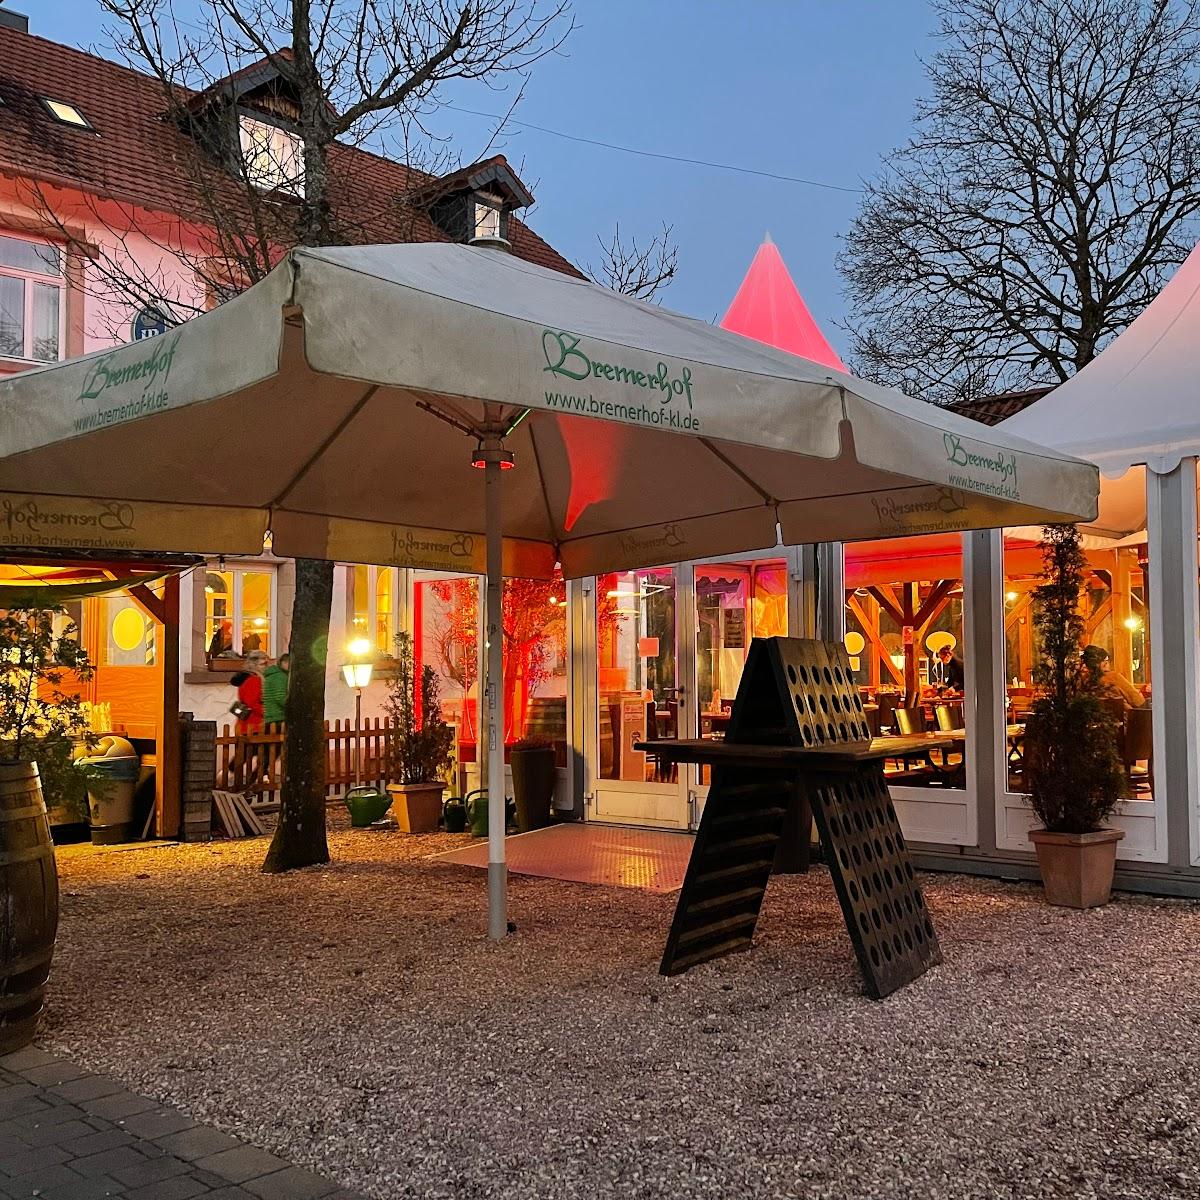 Restaurant "Landgasthof Bremerhof" in Kaiserslautern